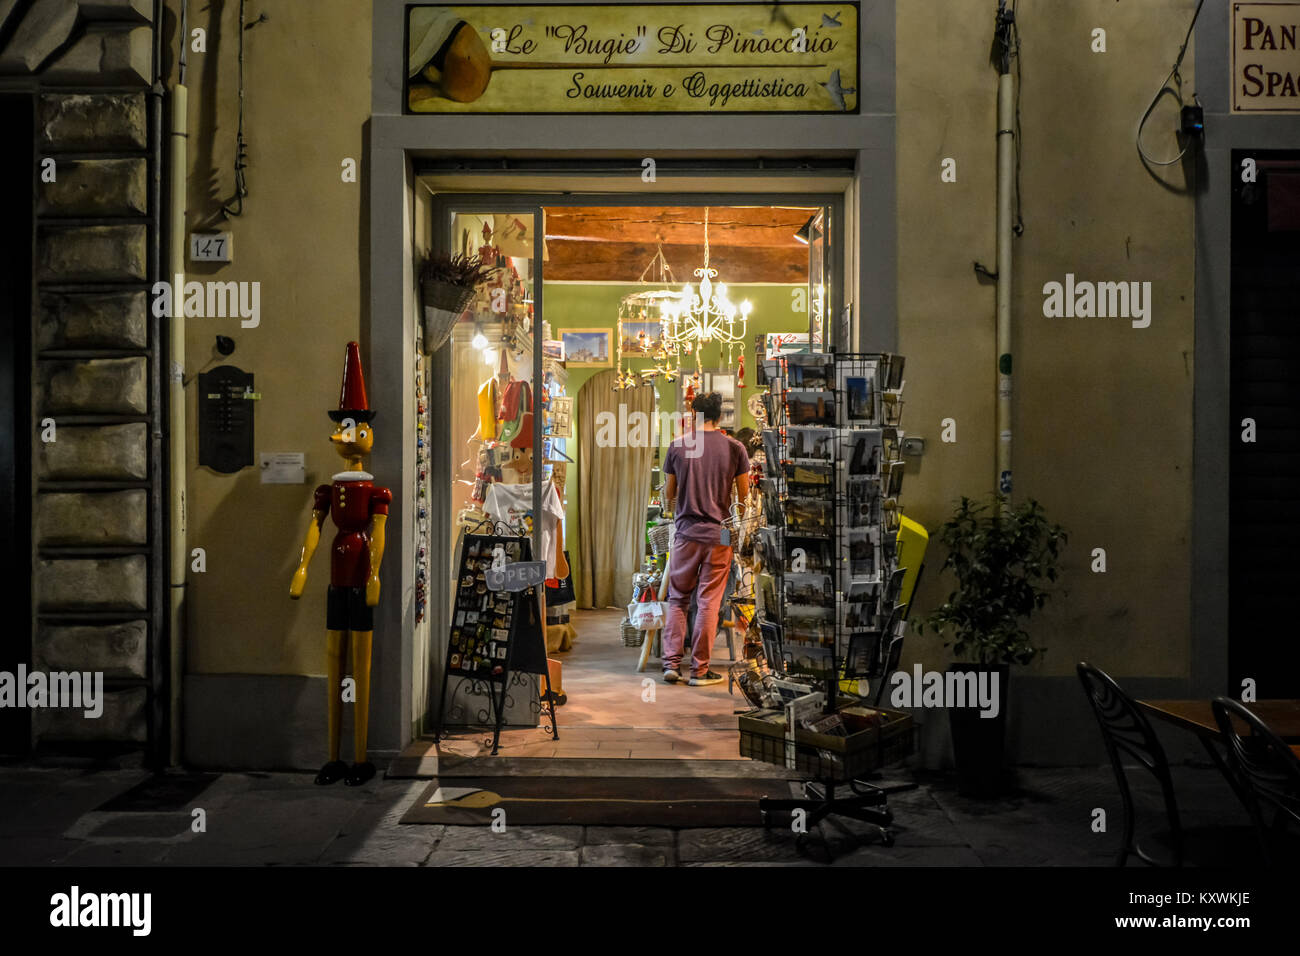 Eine übergroße Pinocchio marionette Marionette außerhalb ein Geschenk und Souvenir Shop in Pisa, Italien in den späten Abend mit einem Kunden innerhalb Stockfoto